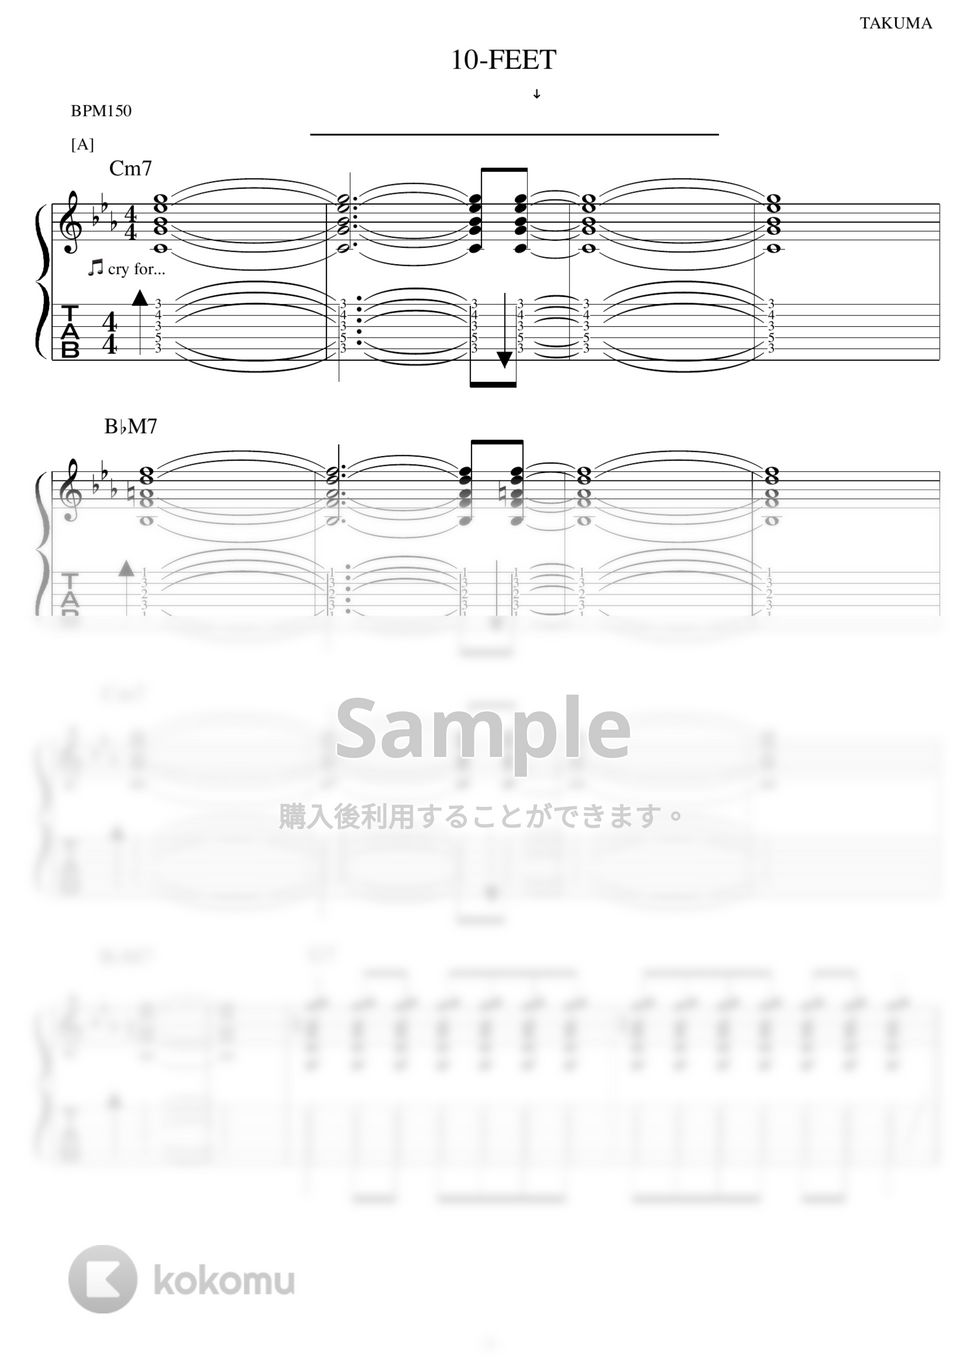 10-FEET - ライオン ギター演奏動画付TAB譜 by バイトーン音楽教室